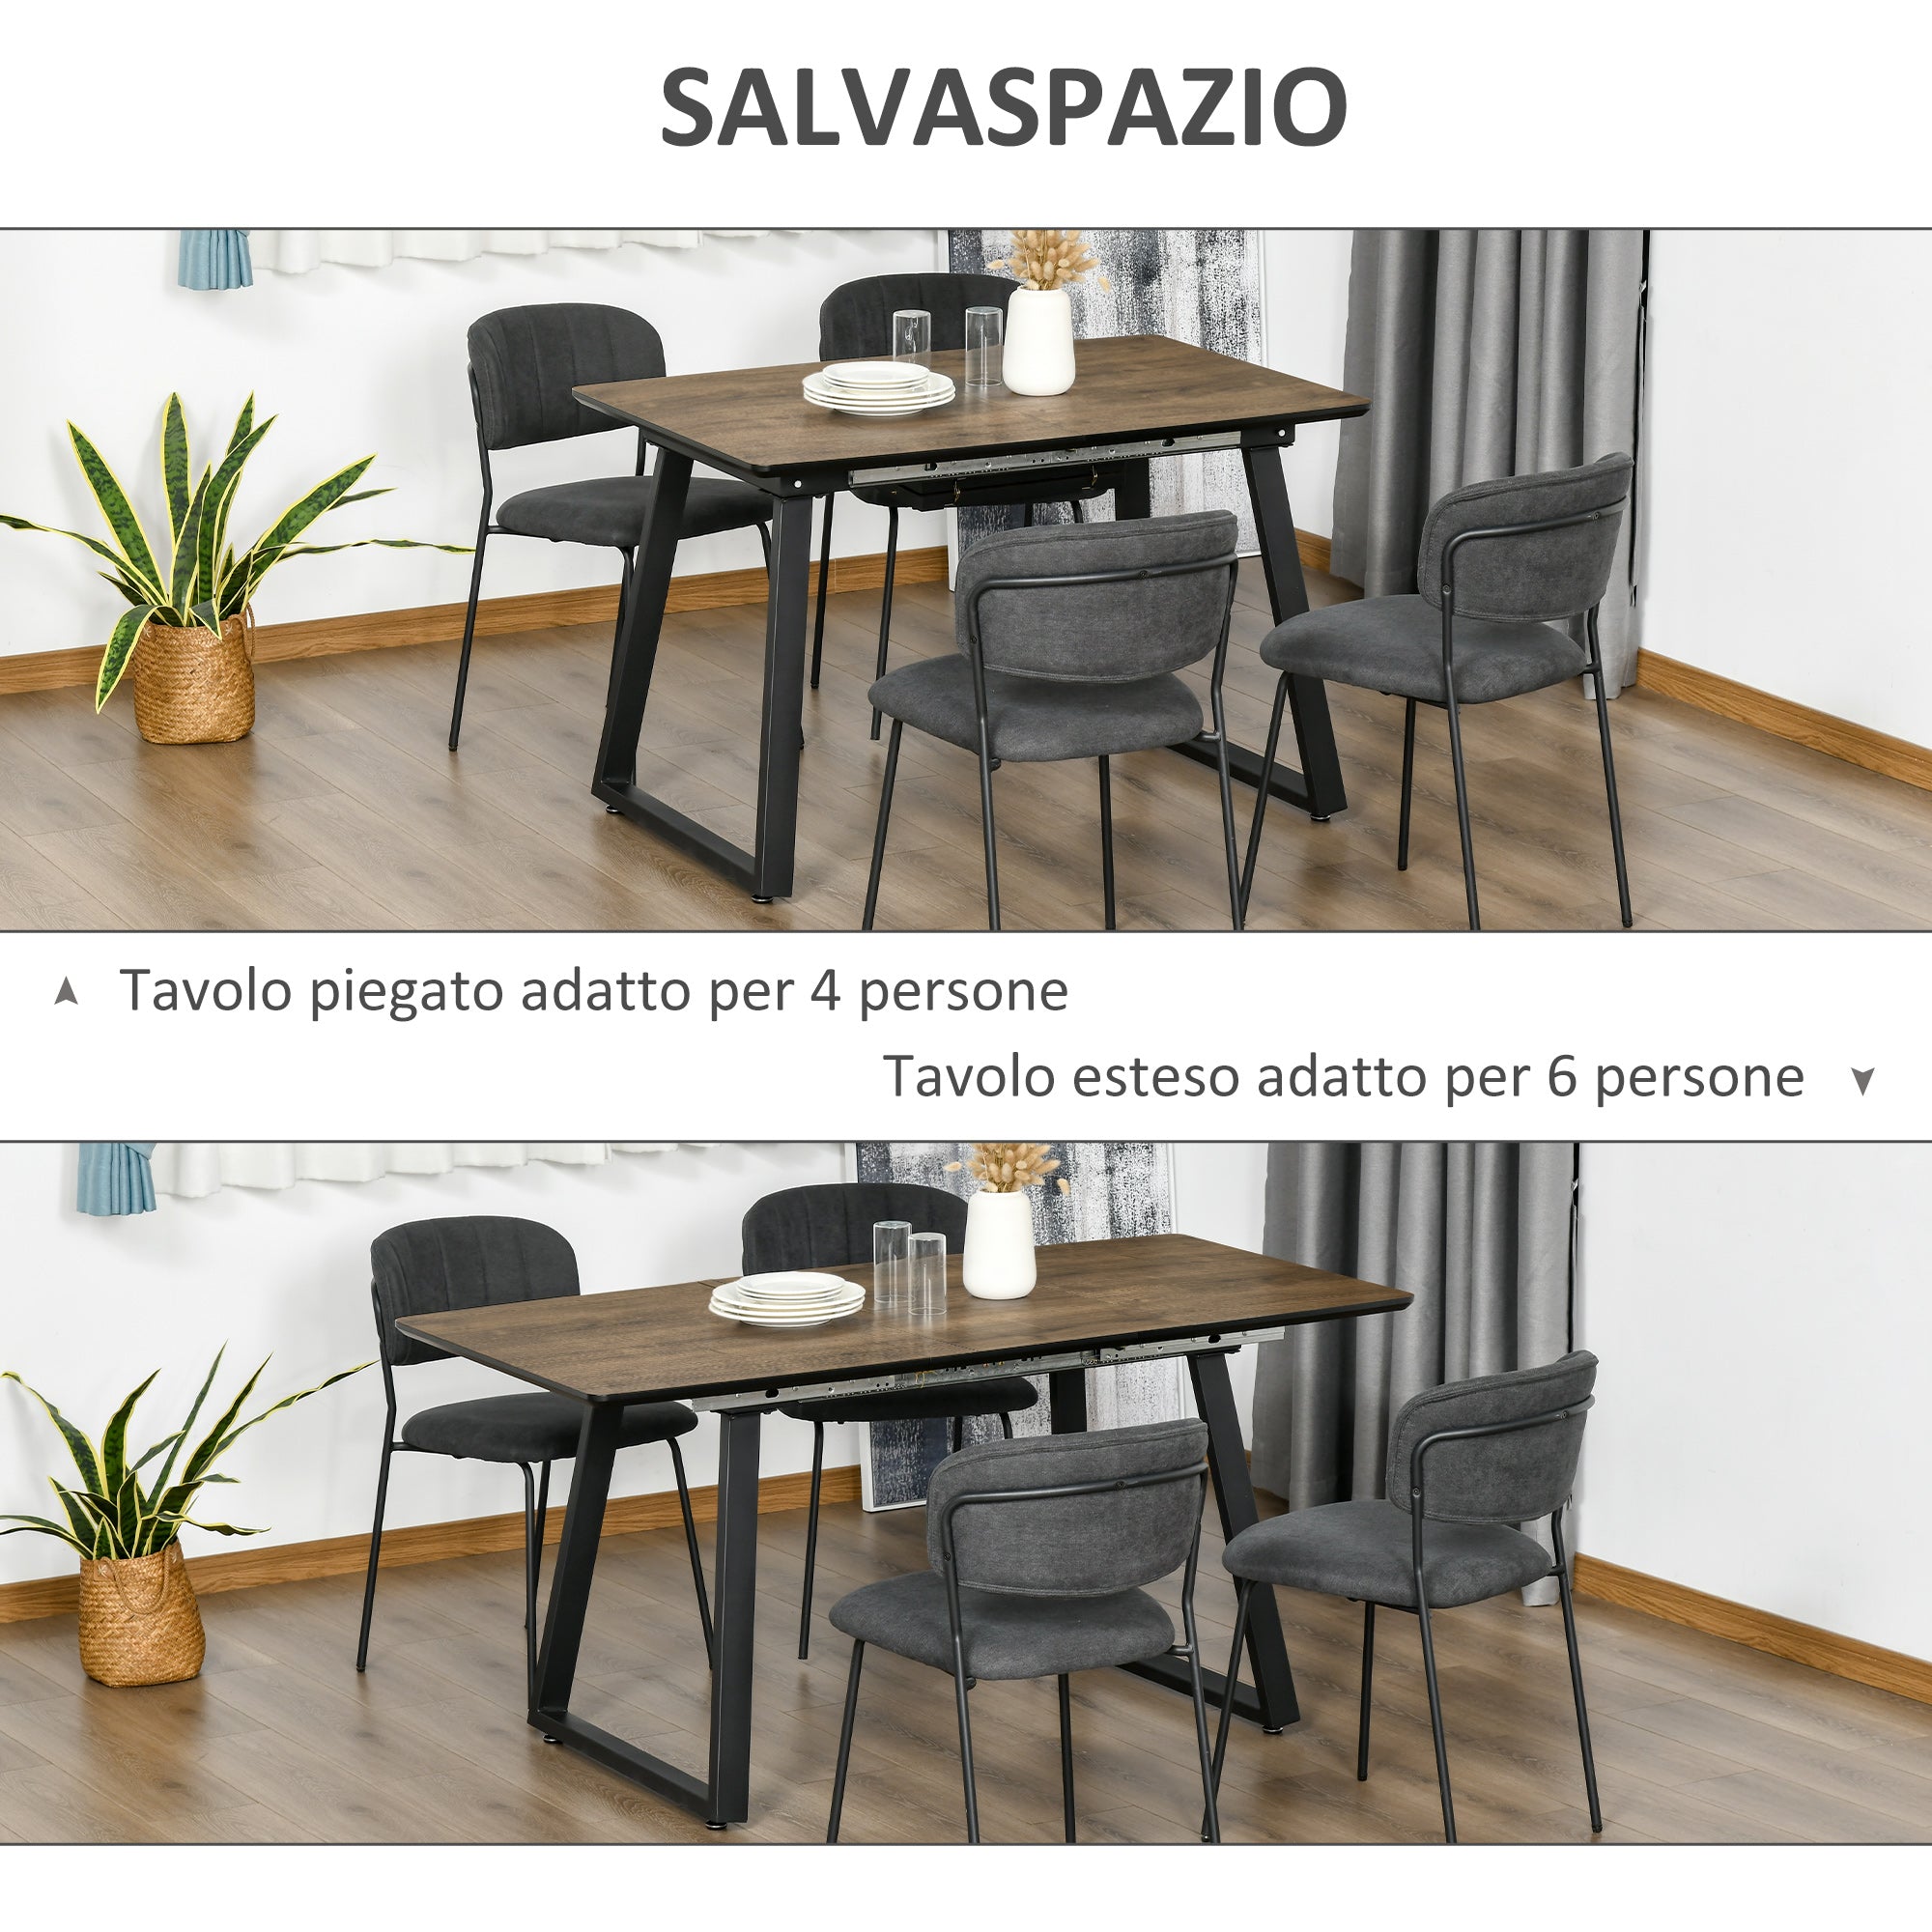 EASYCOMFORT Tavolo da Pranzo Salvaspazio Allungabile per 4-6 Persone in MDF  e Metallo, 120-160x80x76 cm, color Legno